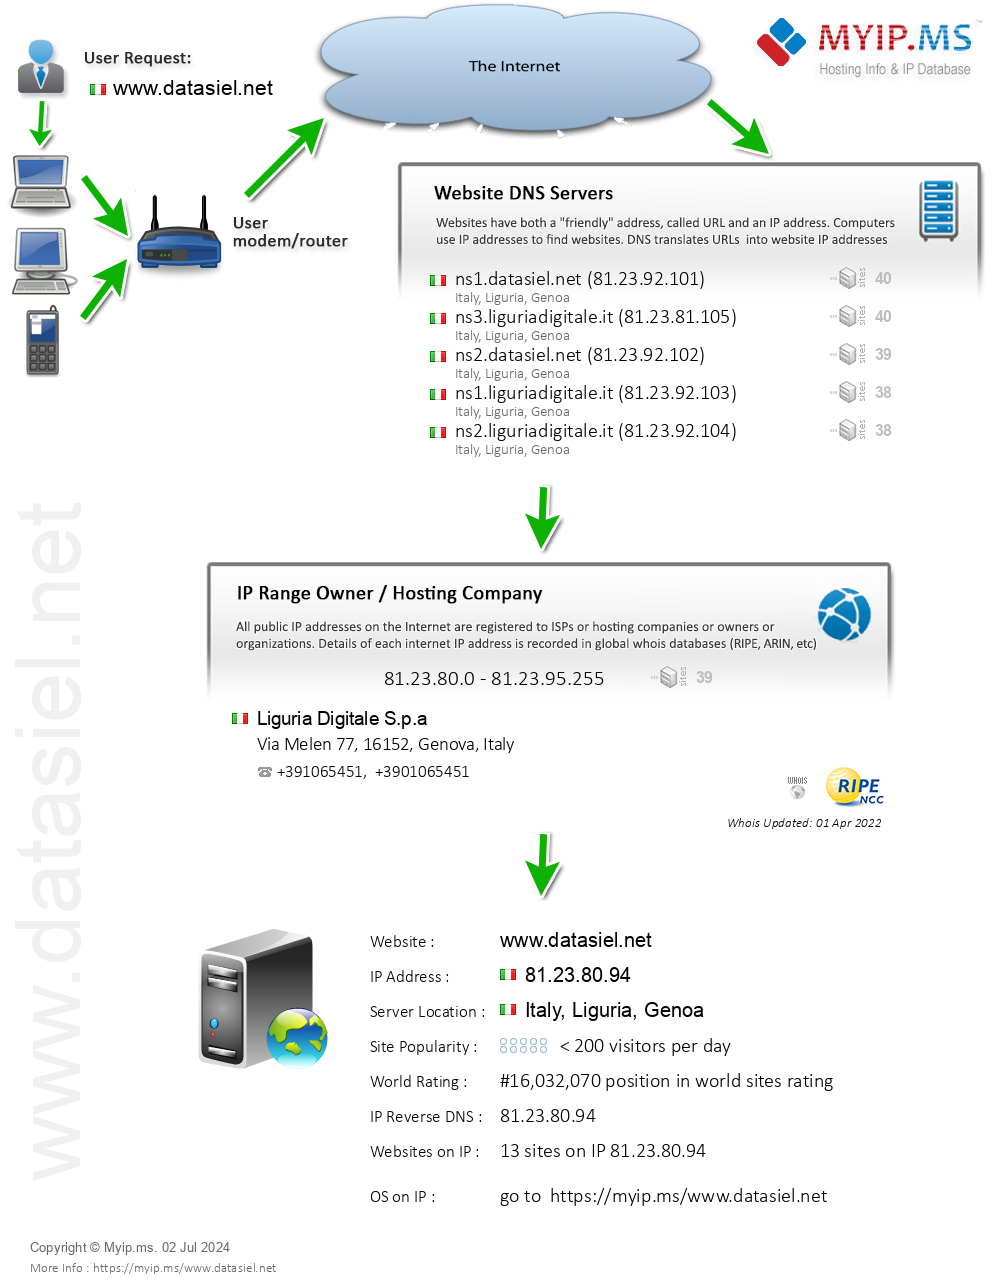 Datasiel.net - Website Hosting Visual IP Diagram